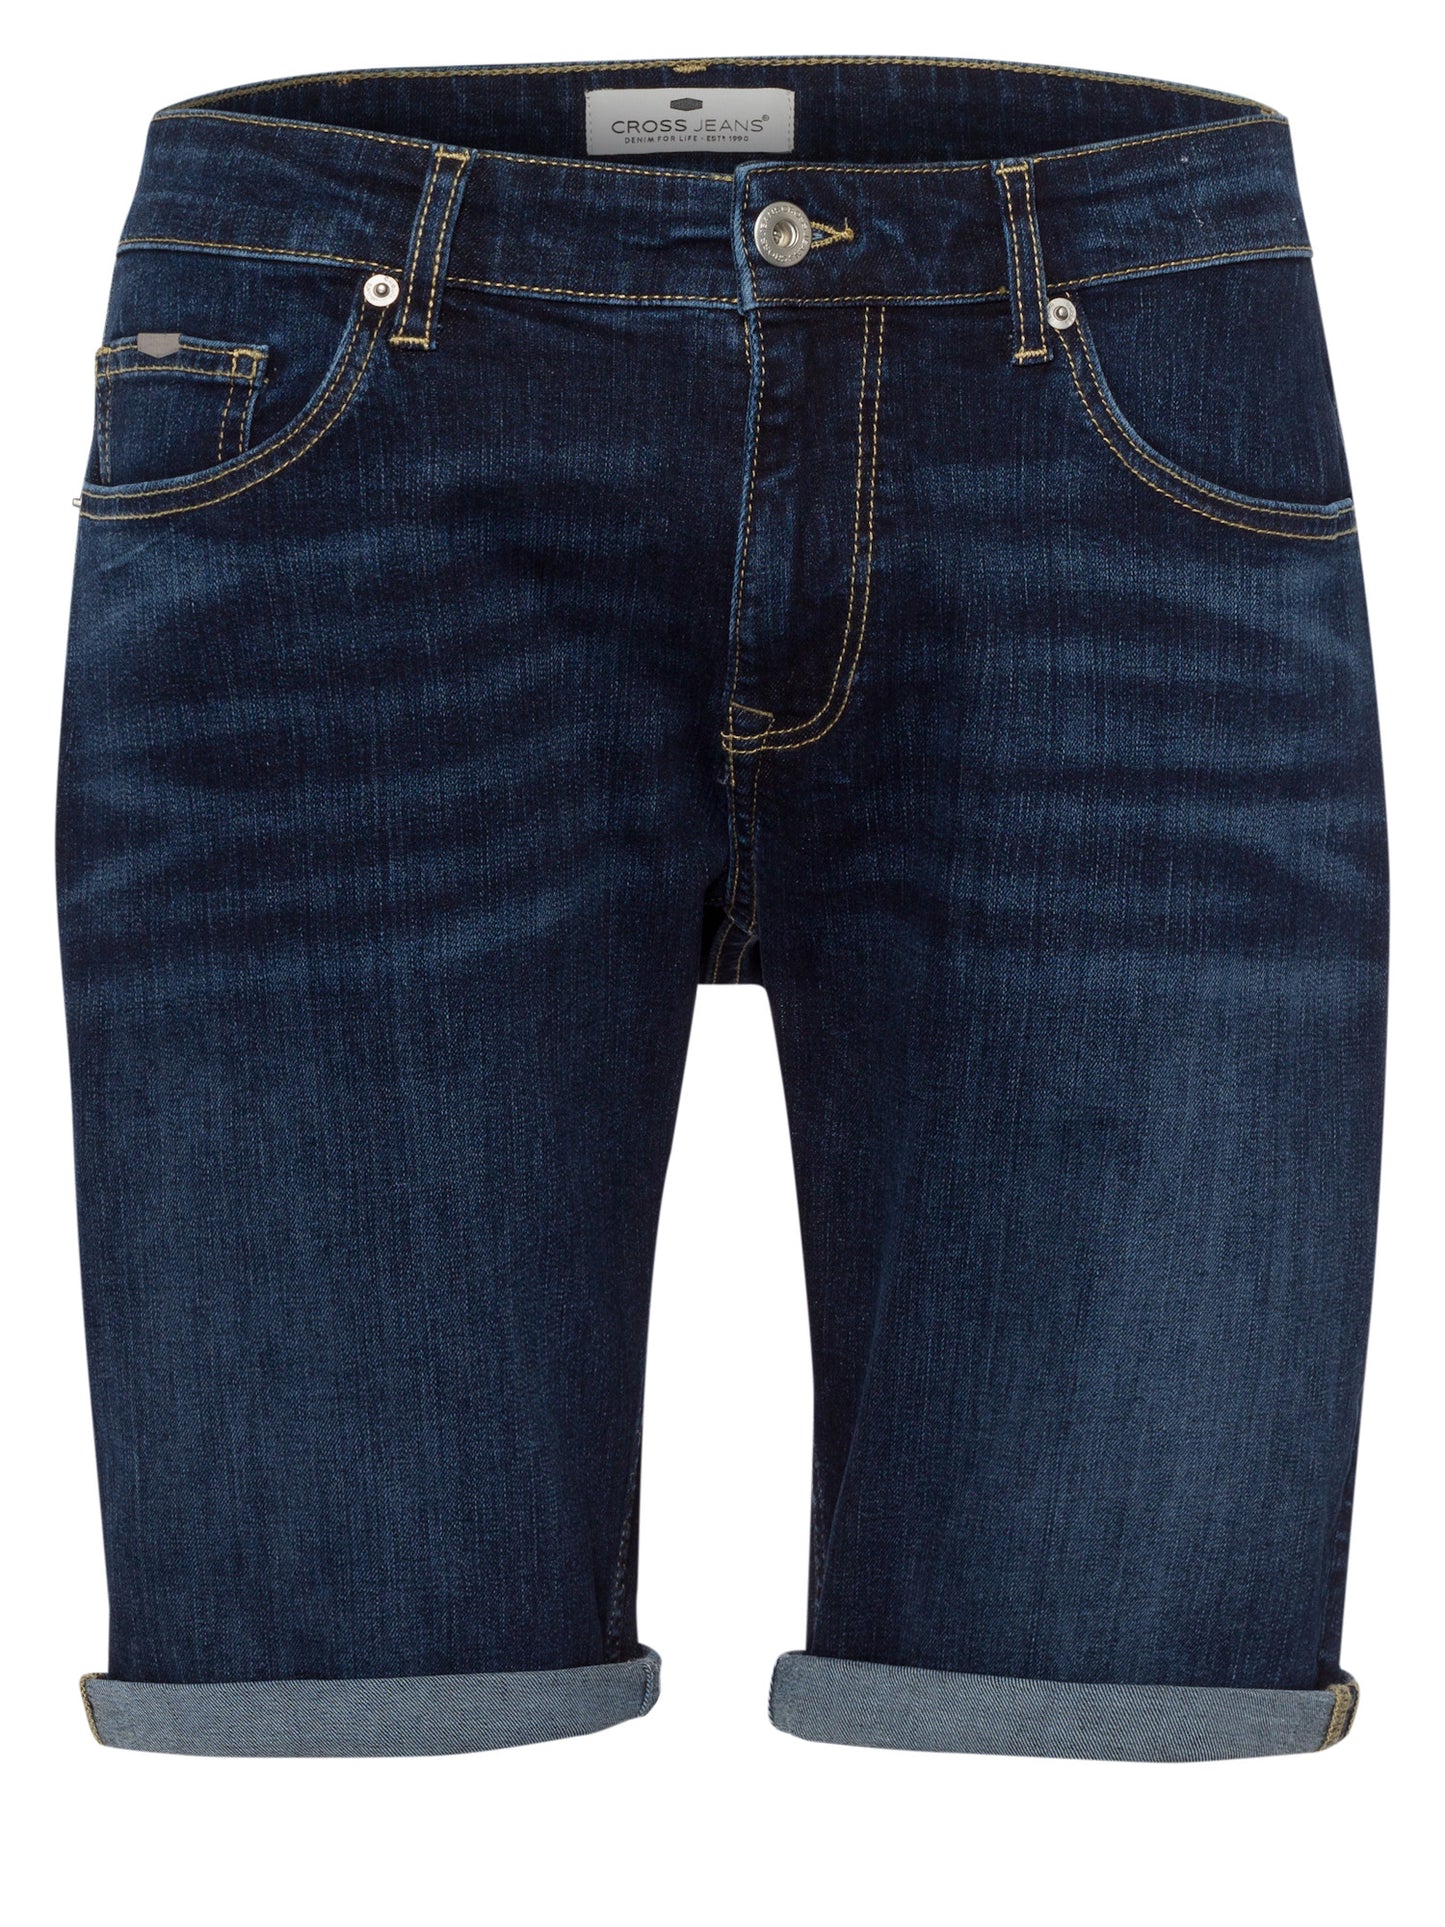 Leom Herren Jeans Shorts Regular dunkelblau